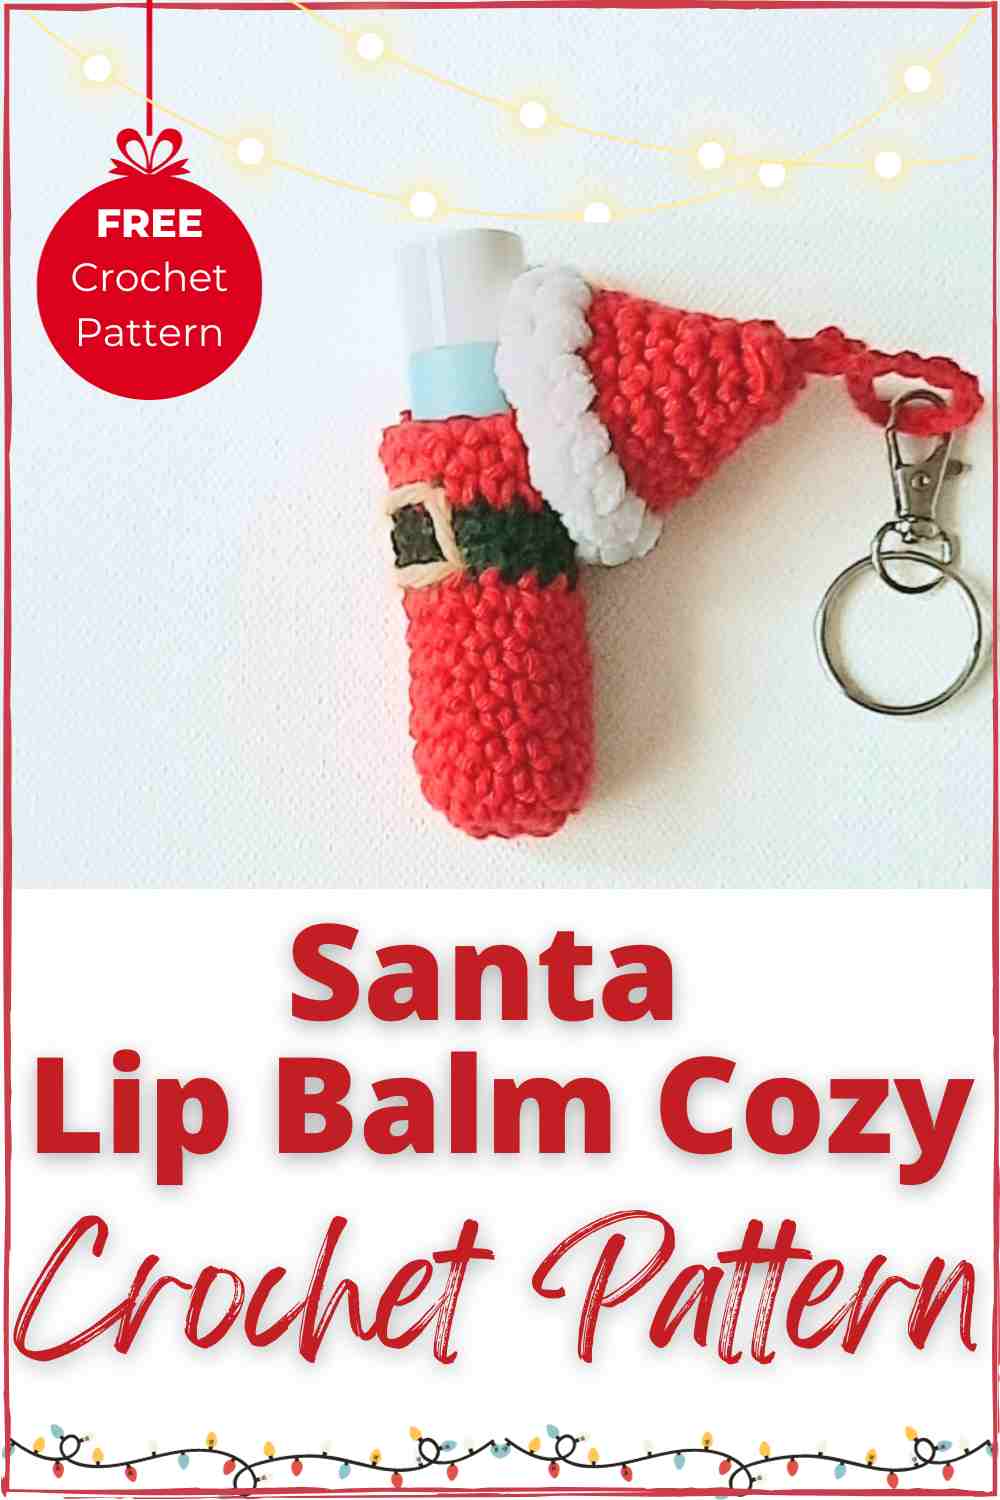 Santa lip balm cozy crochet pattern free